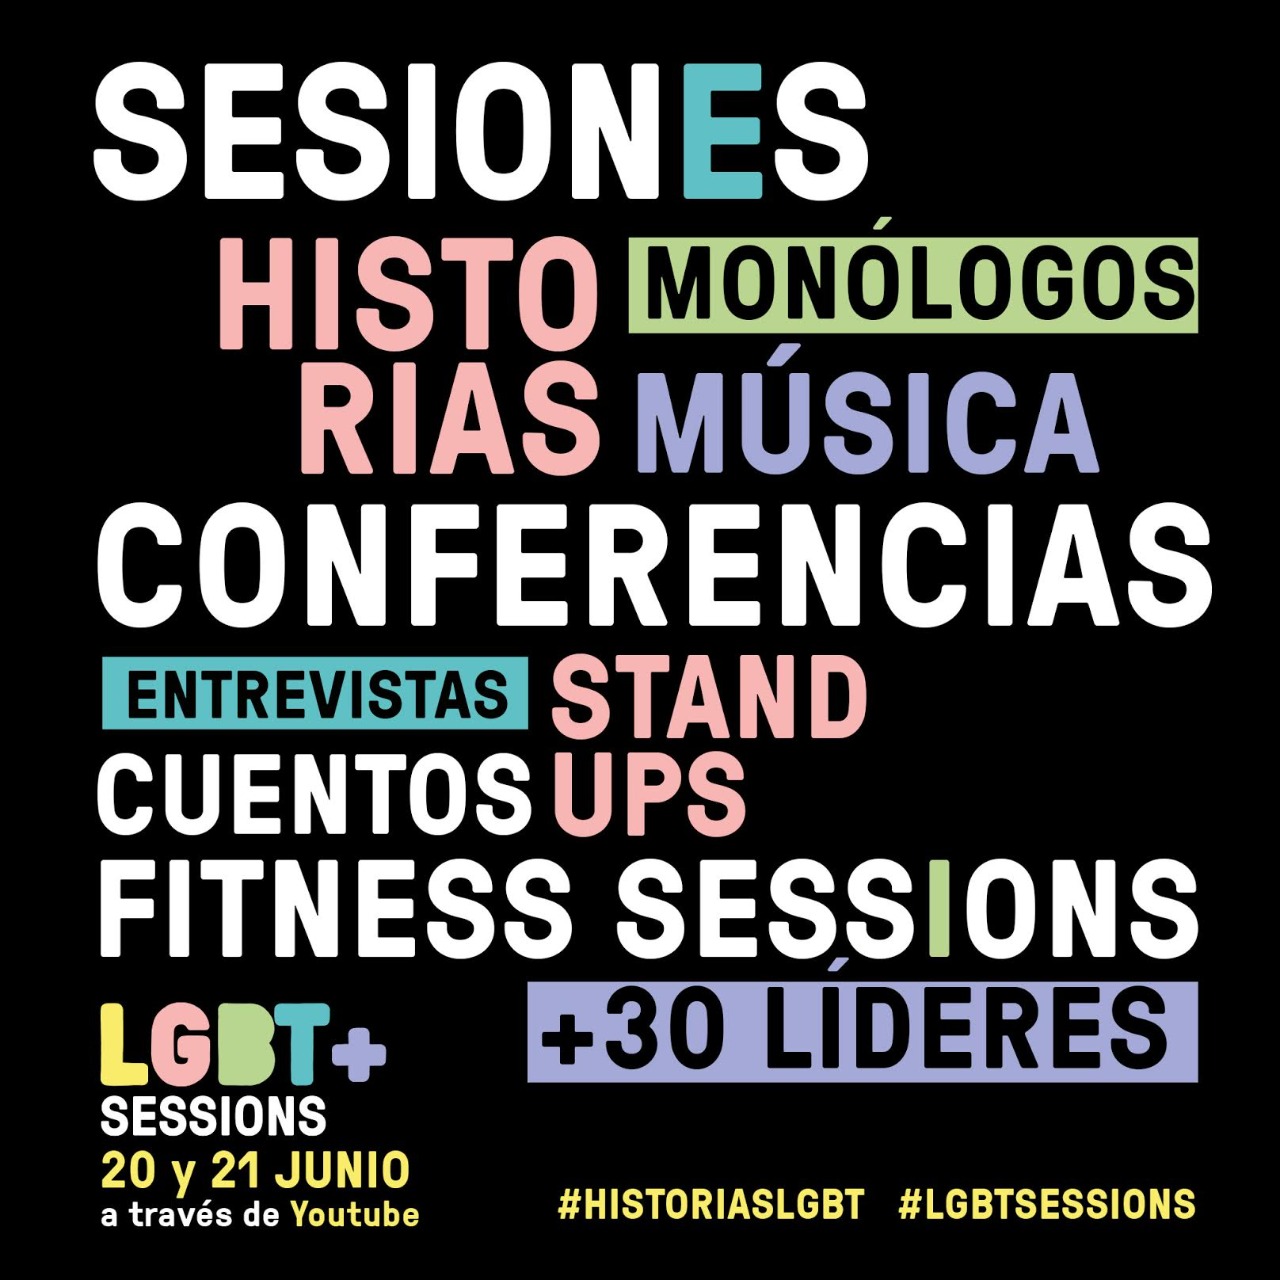 LGBT+ SESSIONS